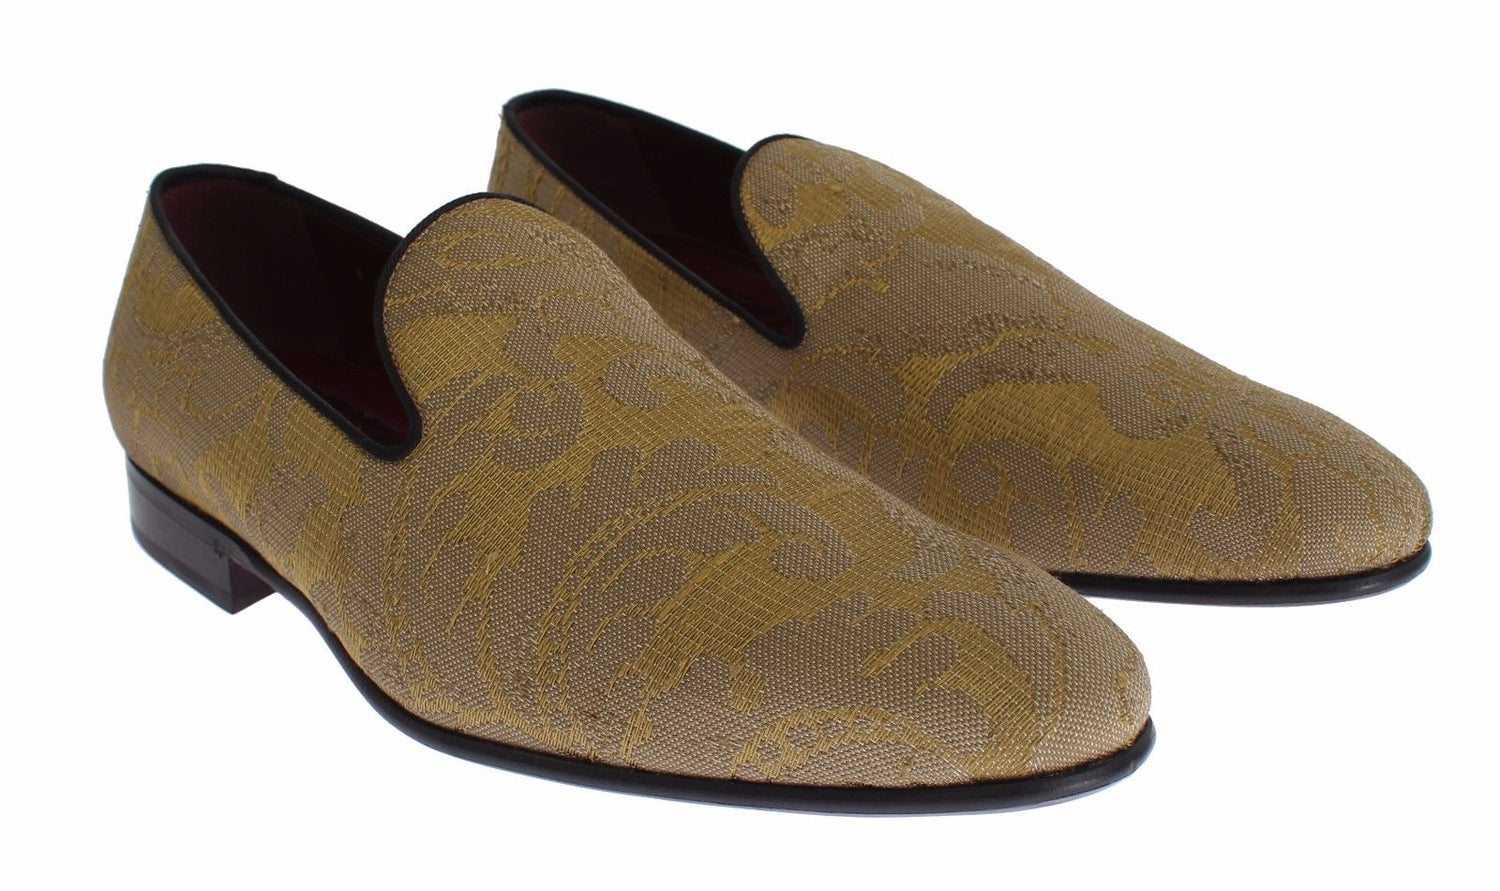 LV Baroque Loafer - Men - Shoes